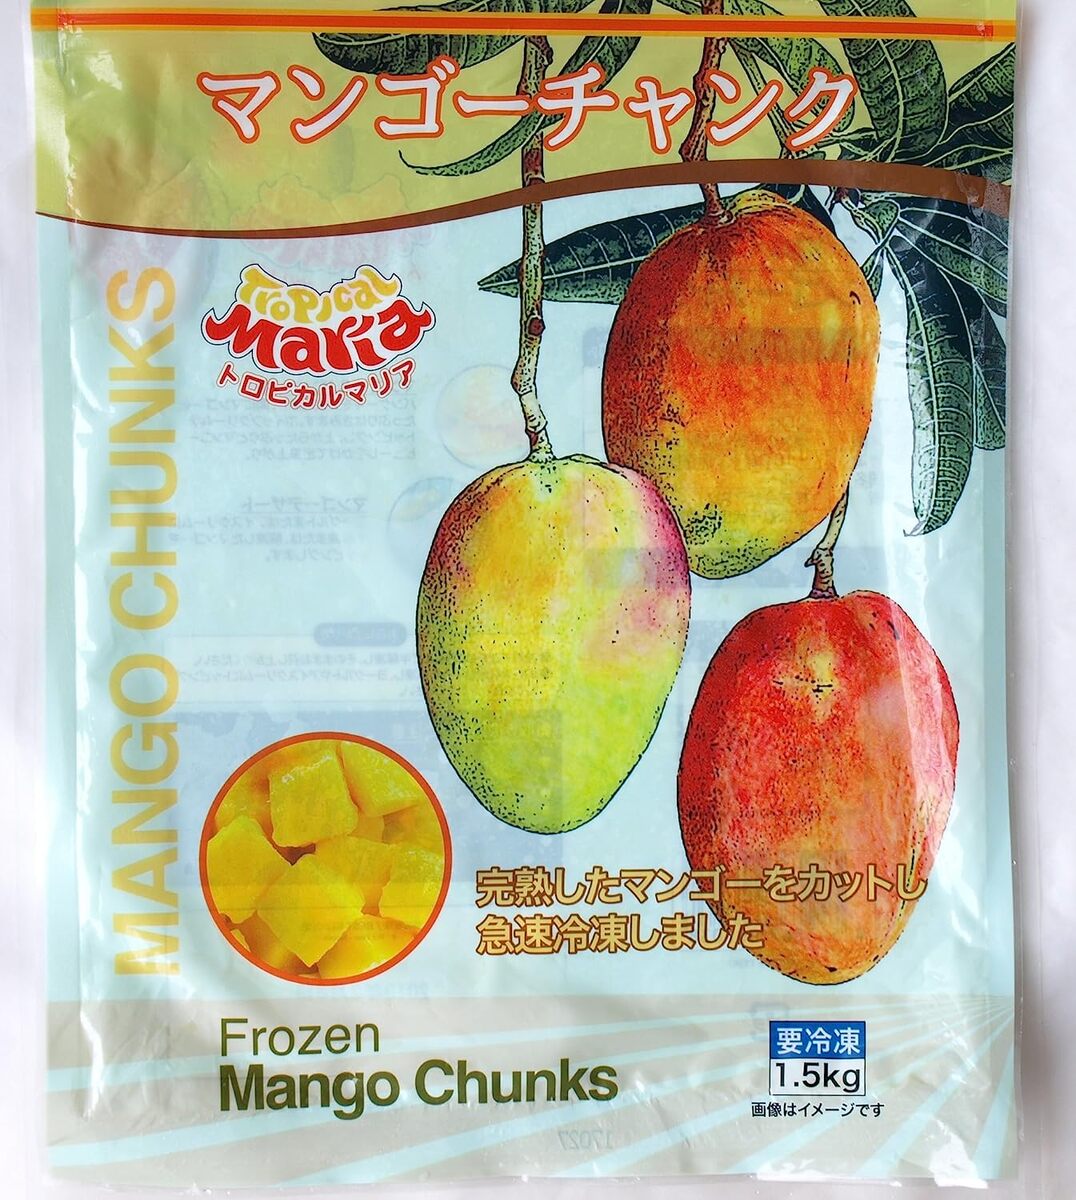 送料無料 トロピカル マリア 完熟マンゴーチャンク 1.5kg 【冷凍】 大容量